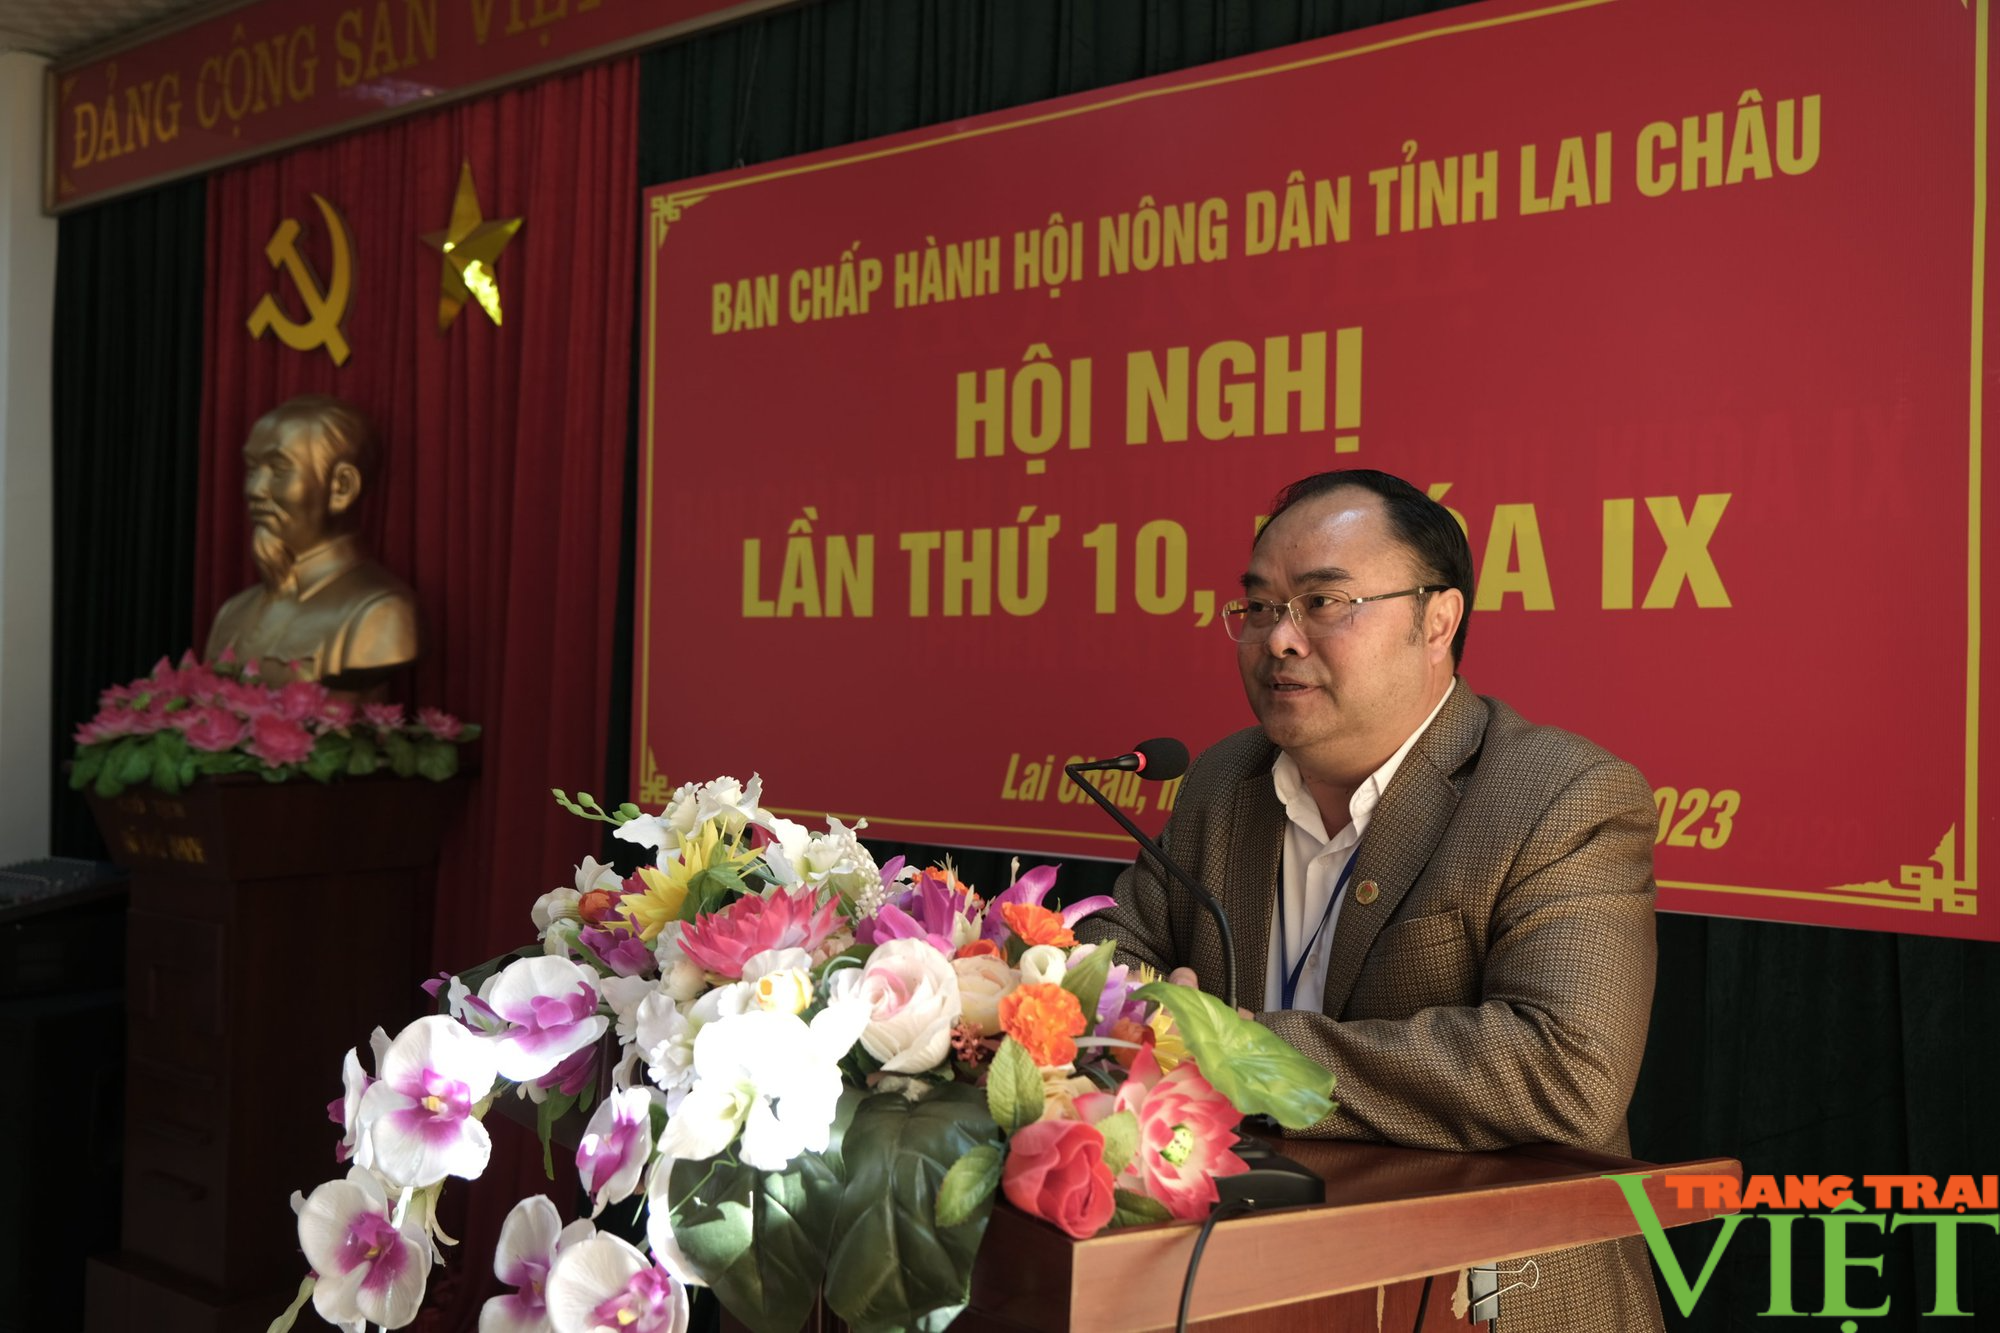 Hội nghị Ban Chấp hành Hội Nông dân tỉnh Lai Châu lần thứ 10 khóa IX - Ảnh 3.